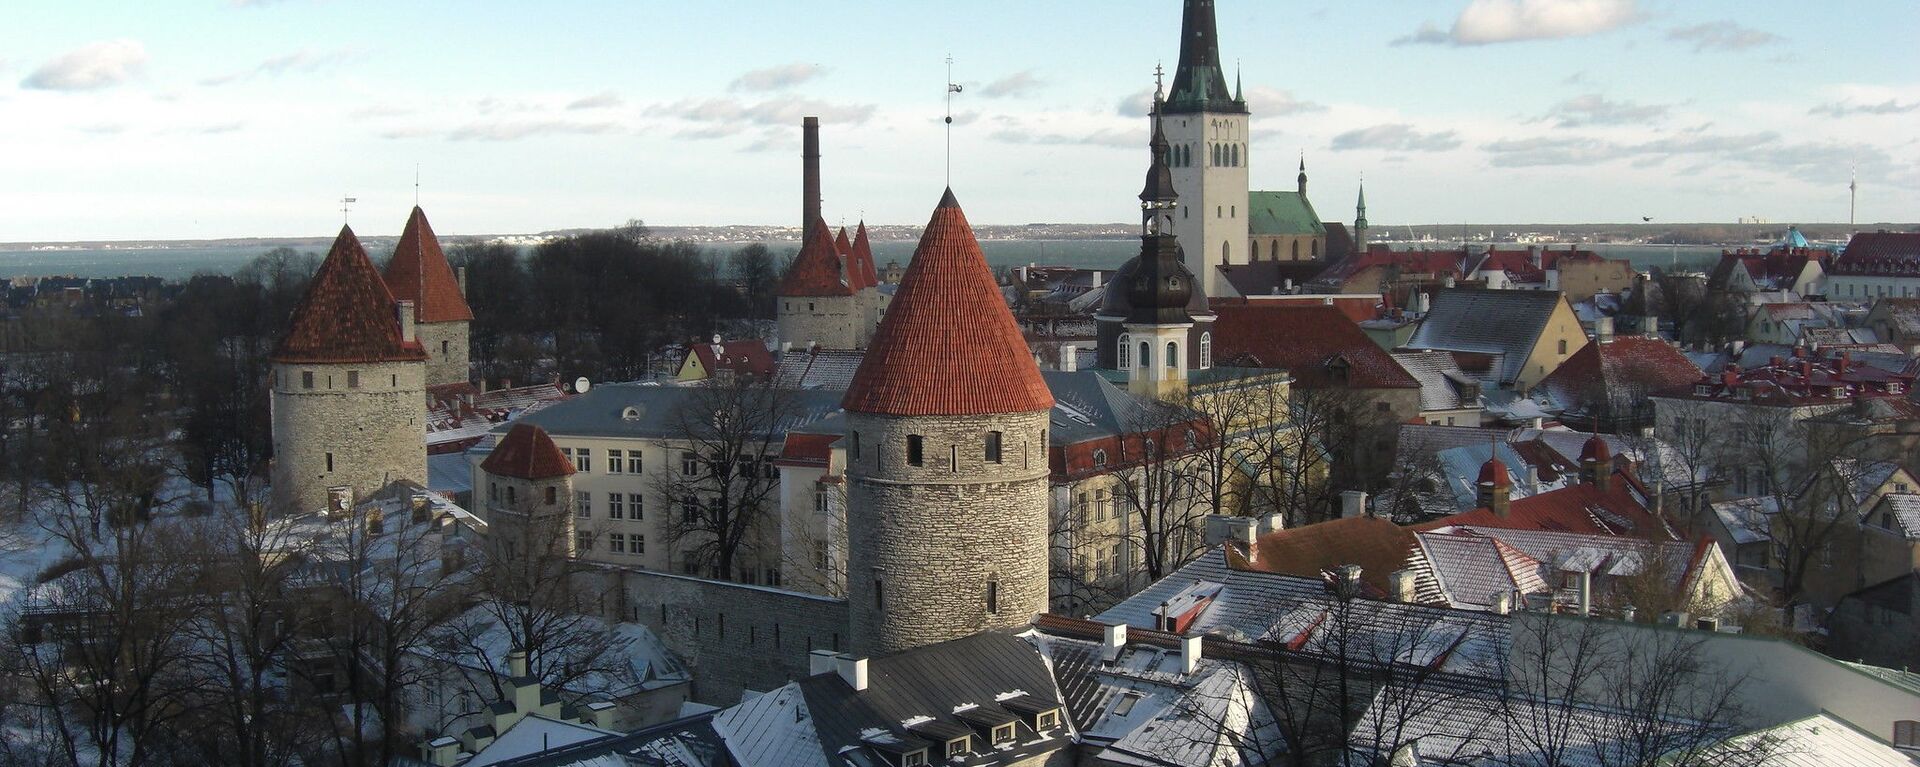 Таллинн, Эстония - Sputnik Lietuva, 1920, 28.02.2021